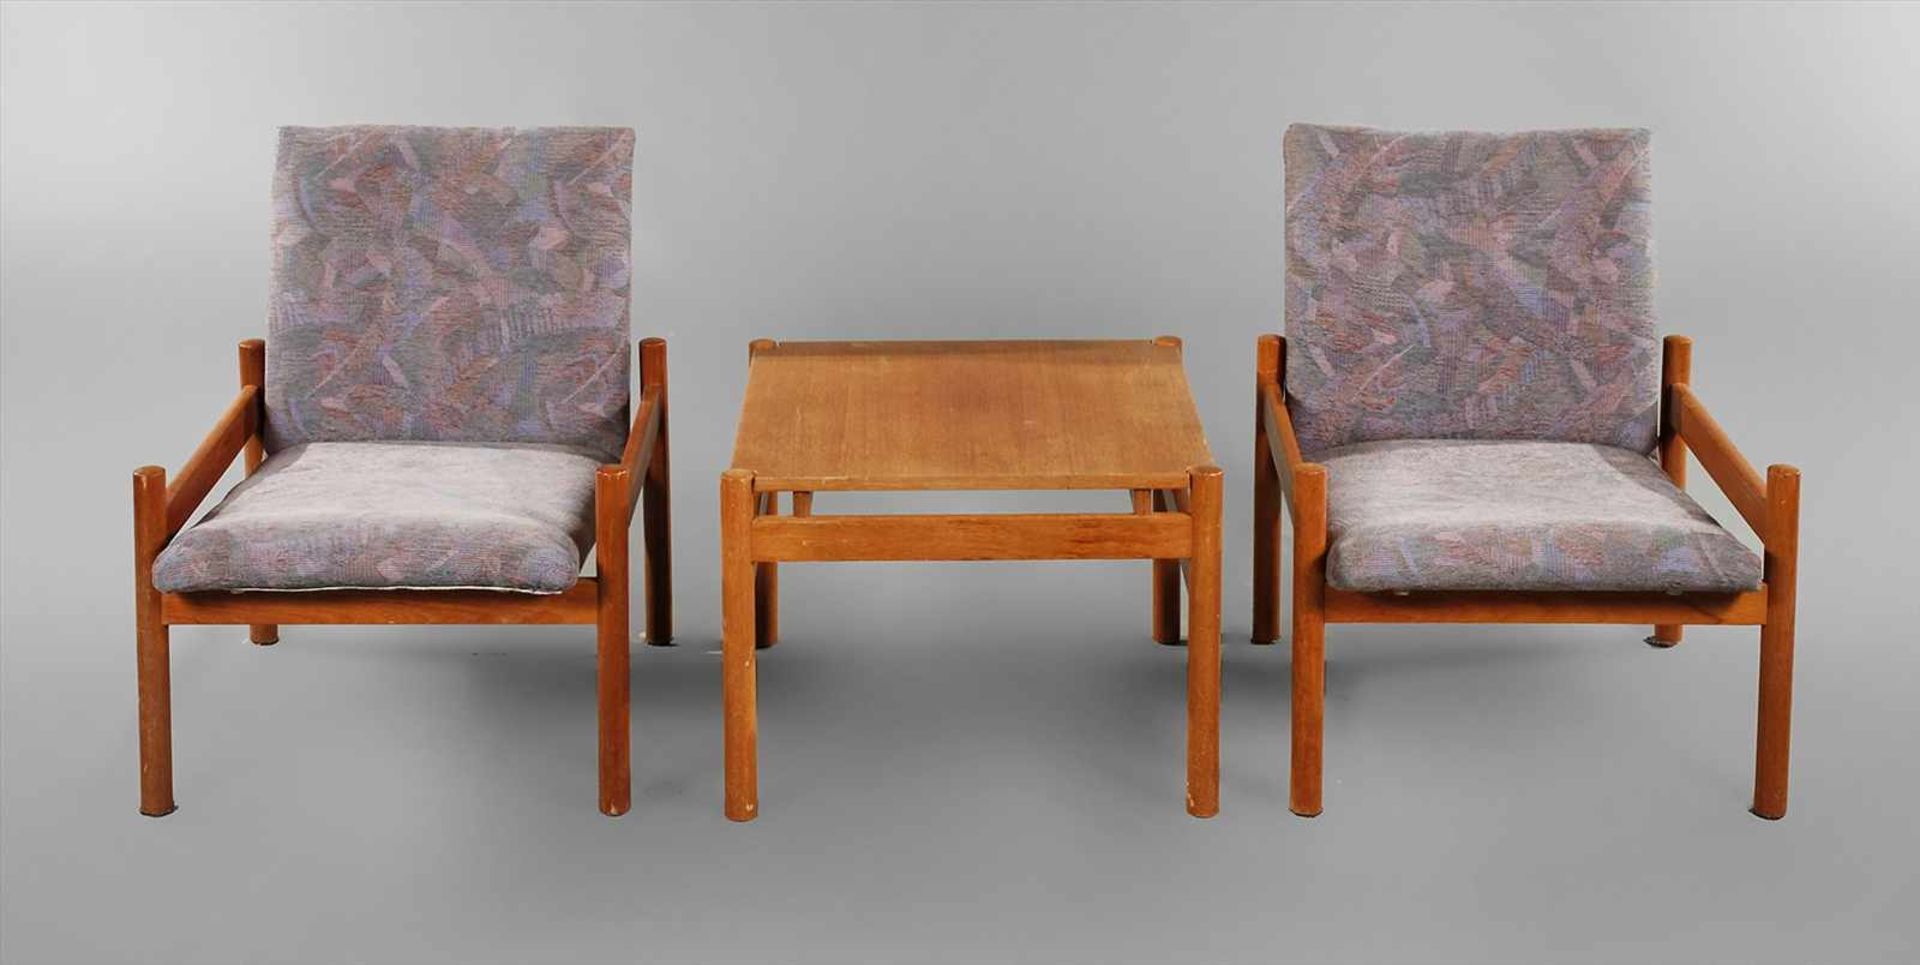 Sitzgruppe Teakholzwohl Skandinavien, 1960er Jahre, bestehend aus Tisch und zwei Sesseln, Gestell